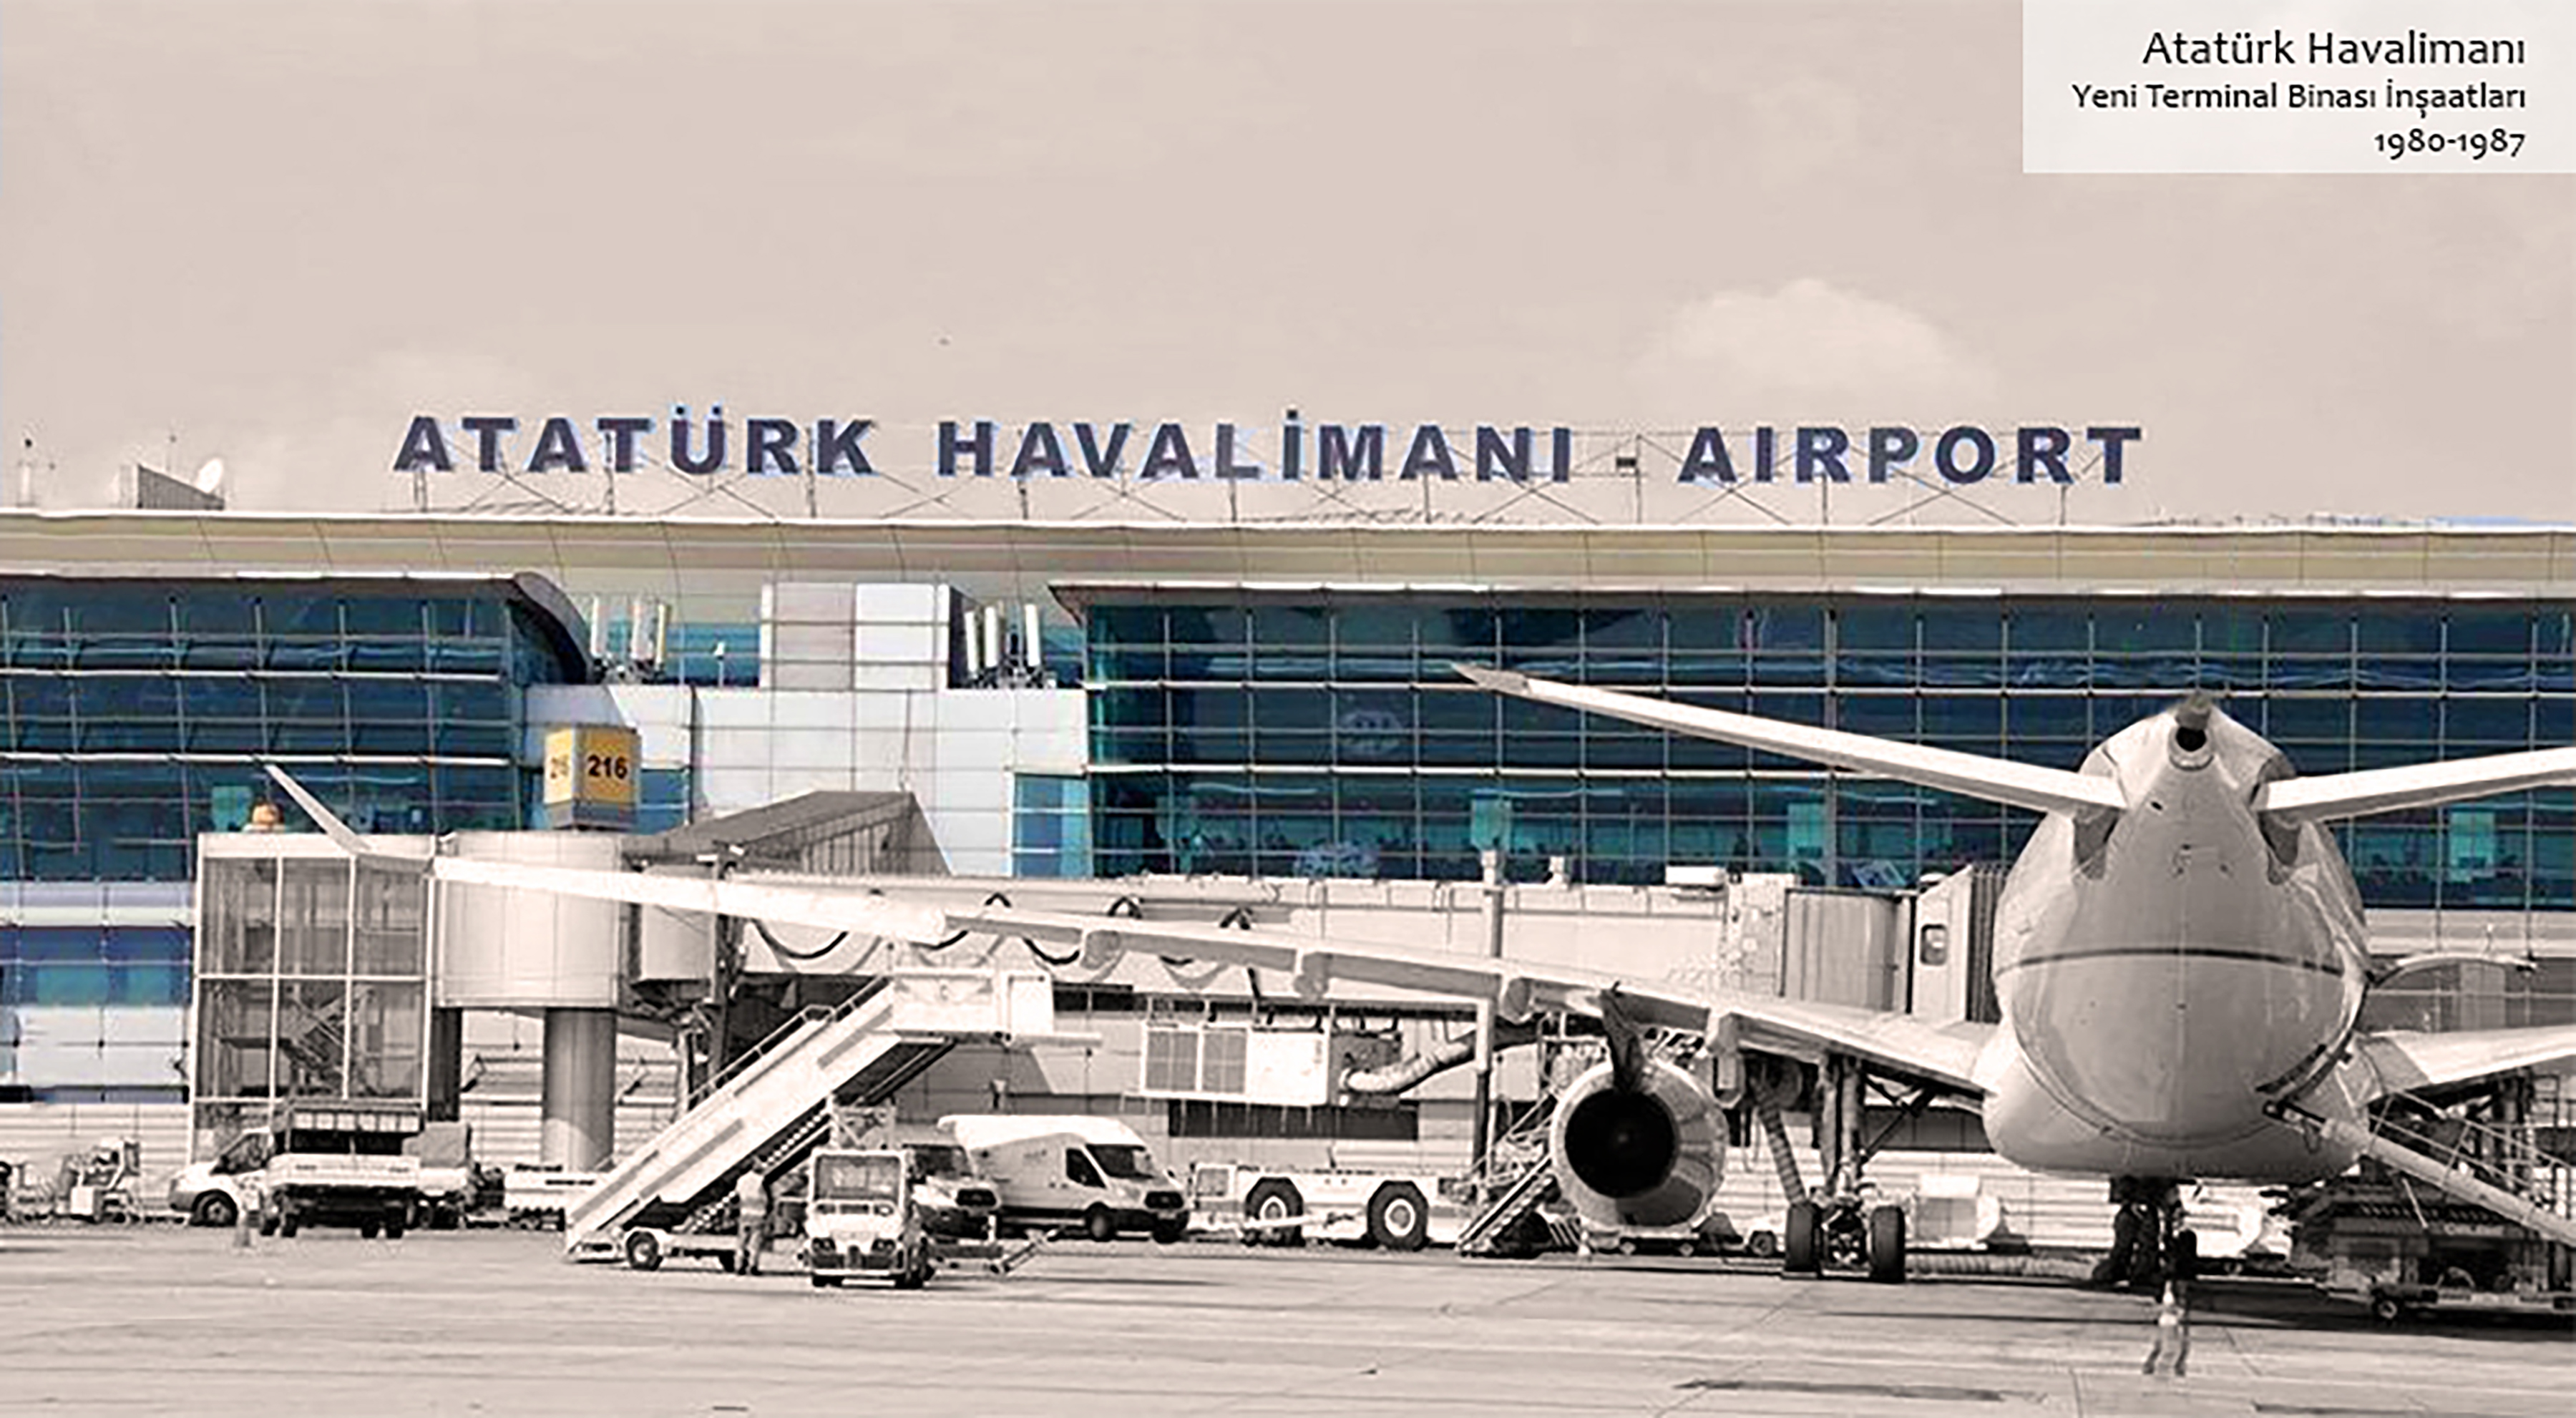 Atatürk Havalimanı | İstanbul İmar A.Ş.